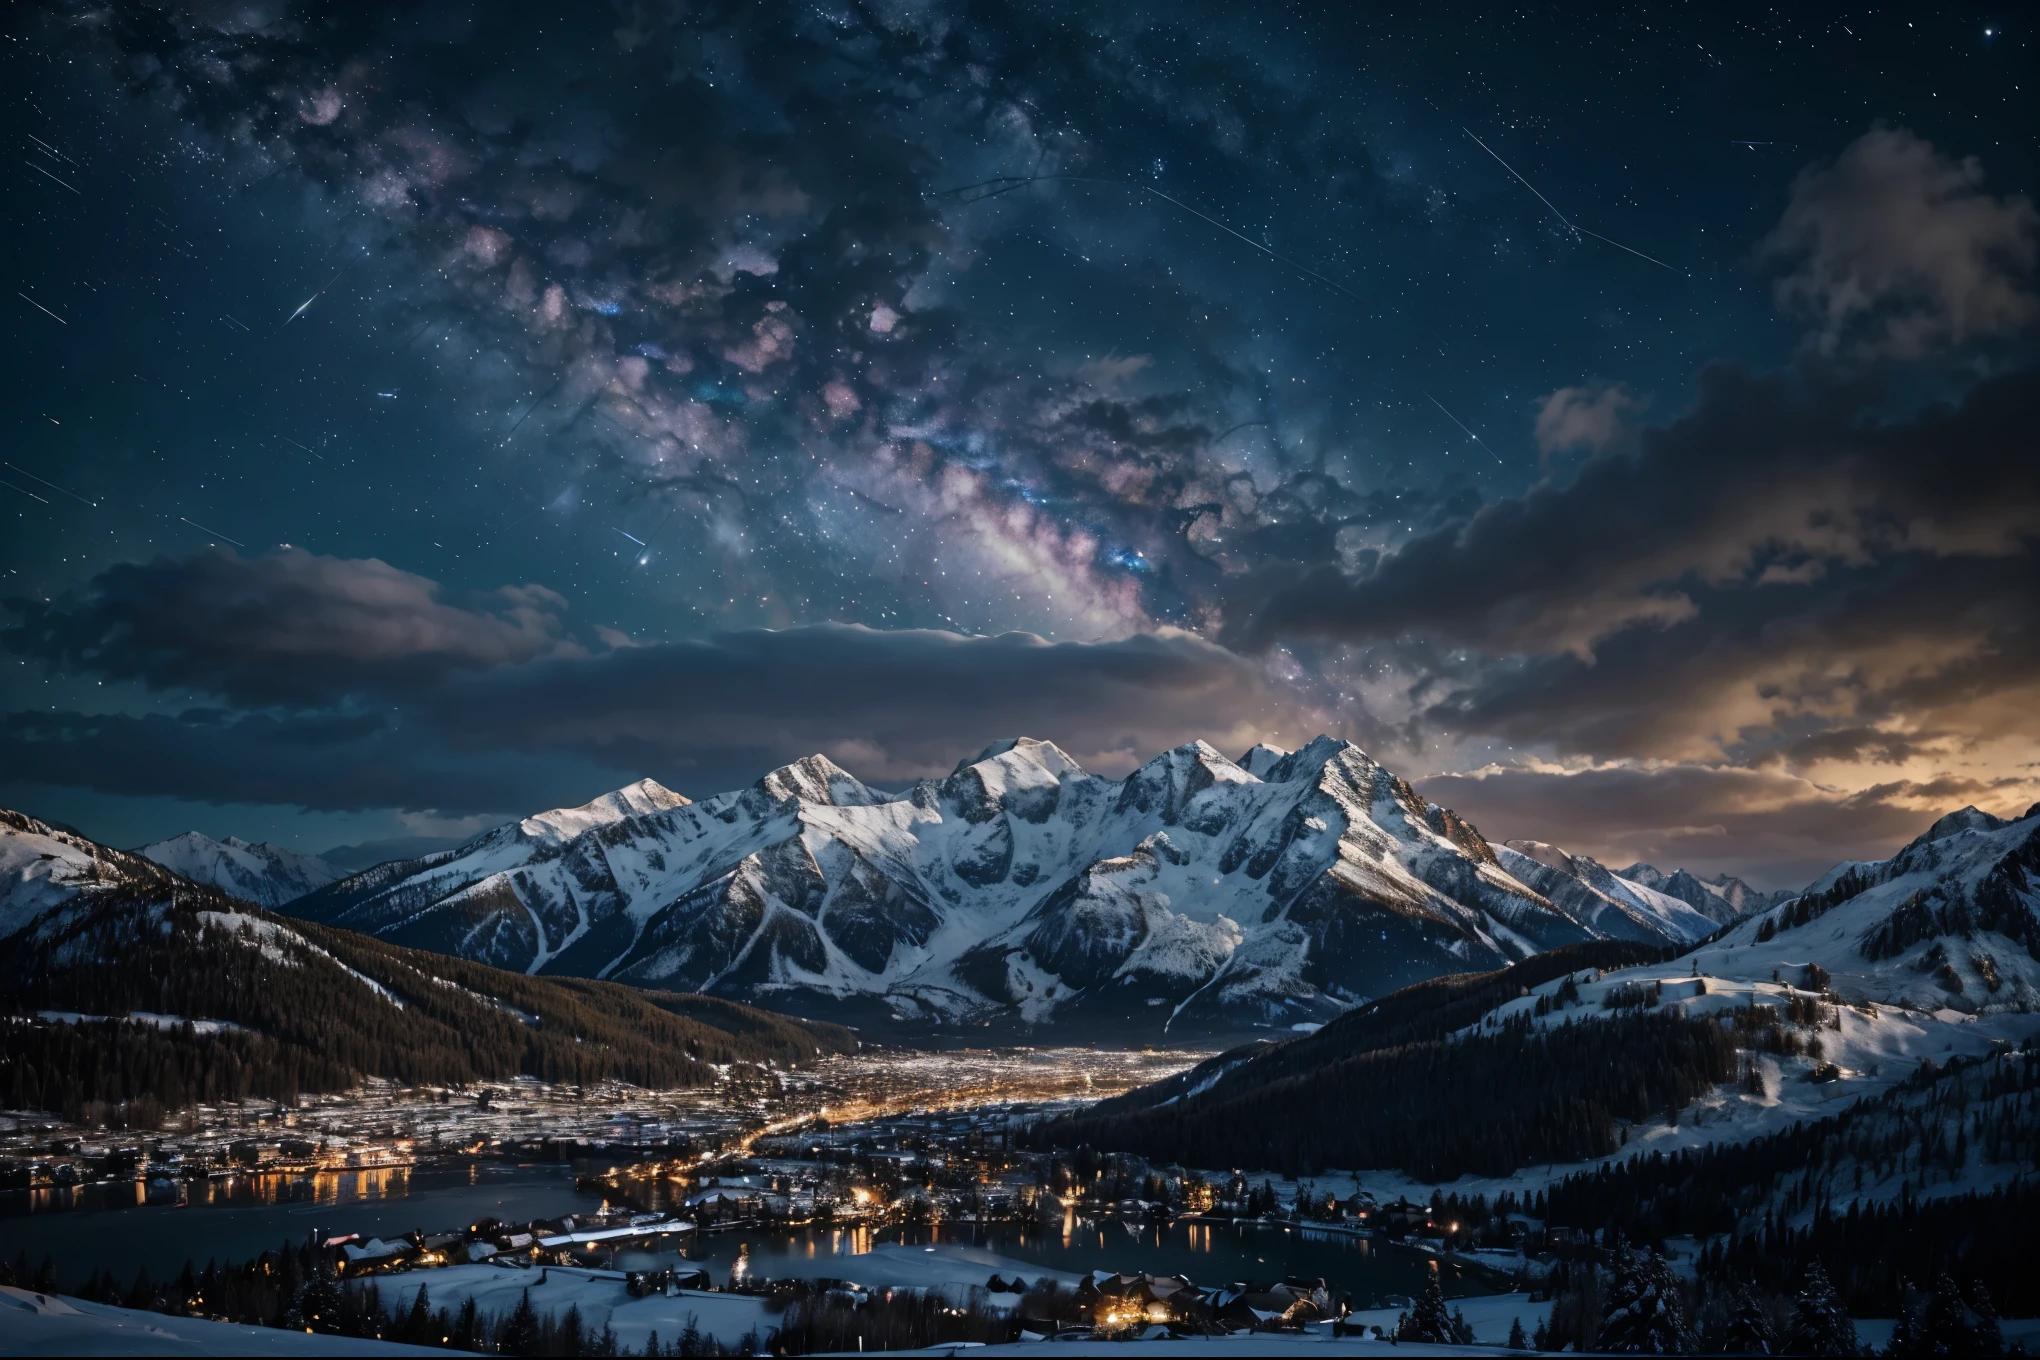 fondo, muchas montañas altas, muchas nubes, cielo de invierno, viendo constelaciones, galaxia, vía Láctea, hermosa noche de invierno con fondo de pantalla de una pequeña ciudad, hermoso lago, Detalles altos, Realista 8k Full HD.
